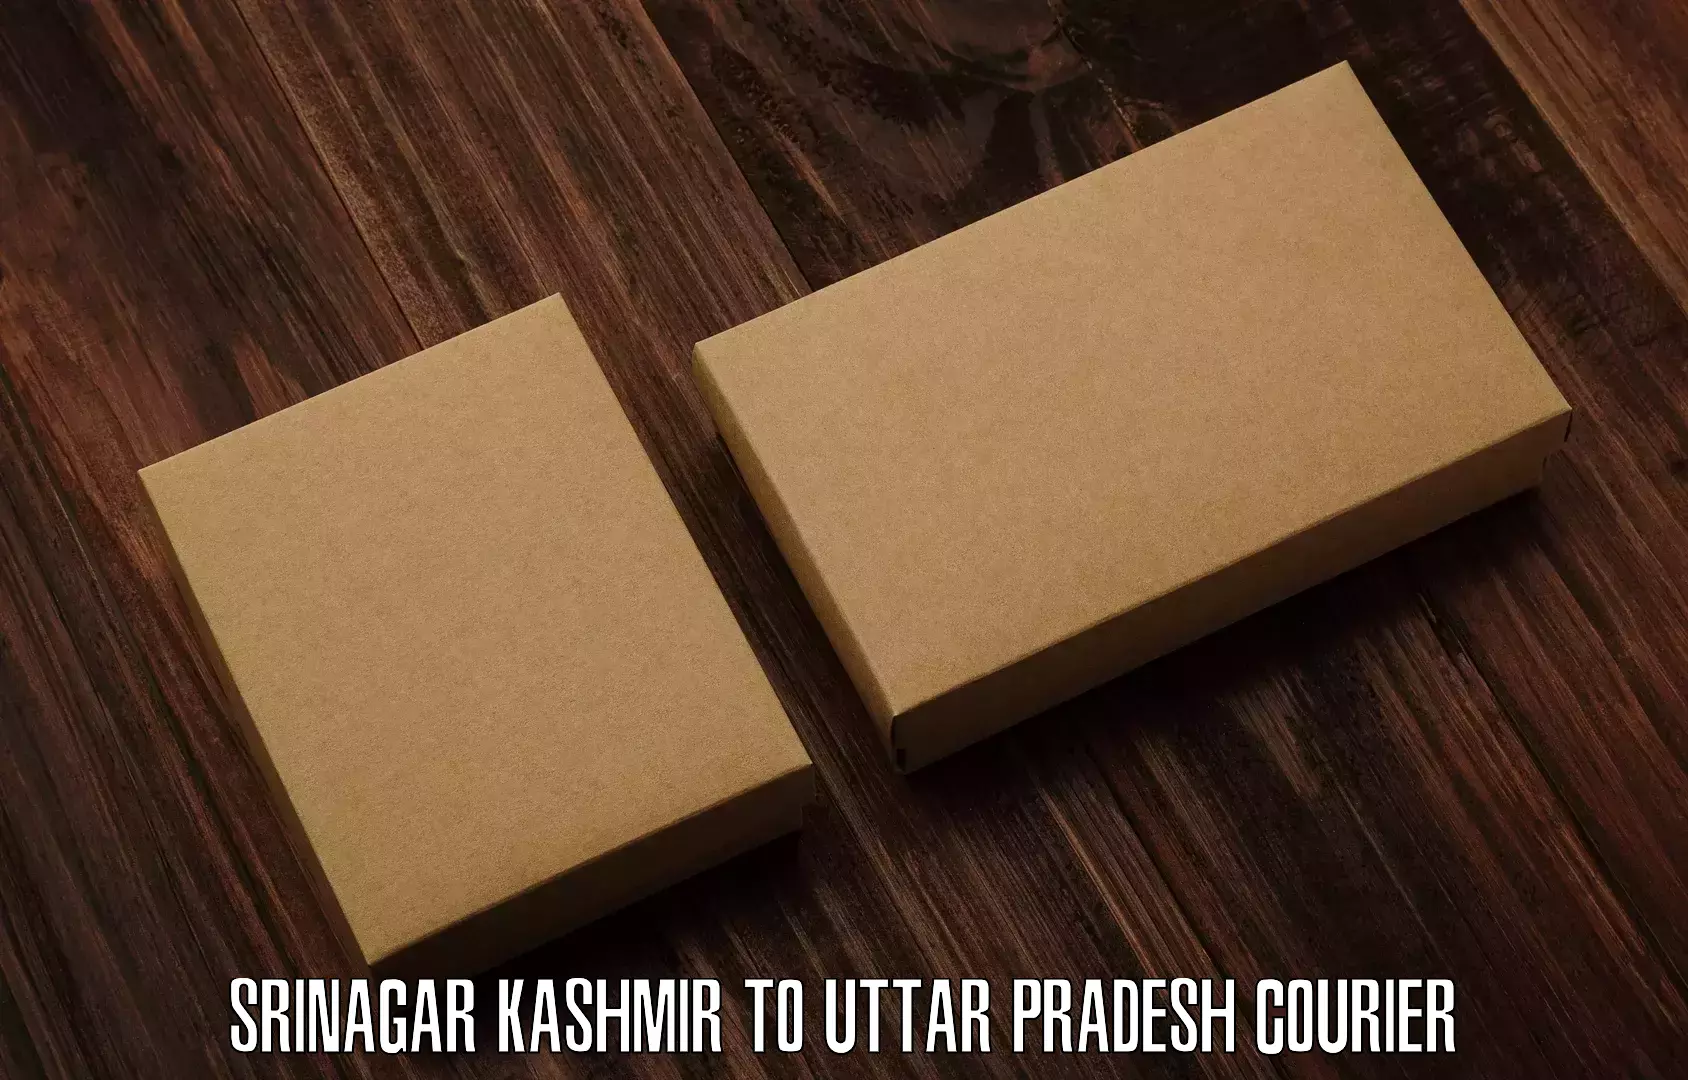 Urban courier service Srinagar Kashmir to Dariyabad